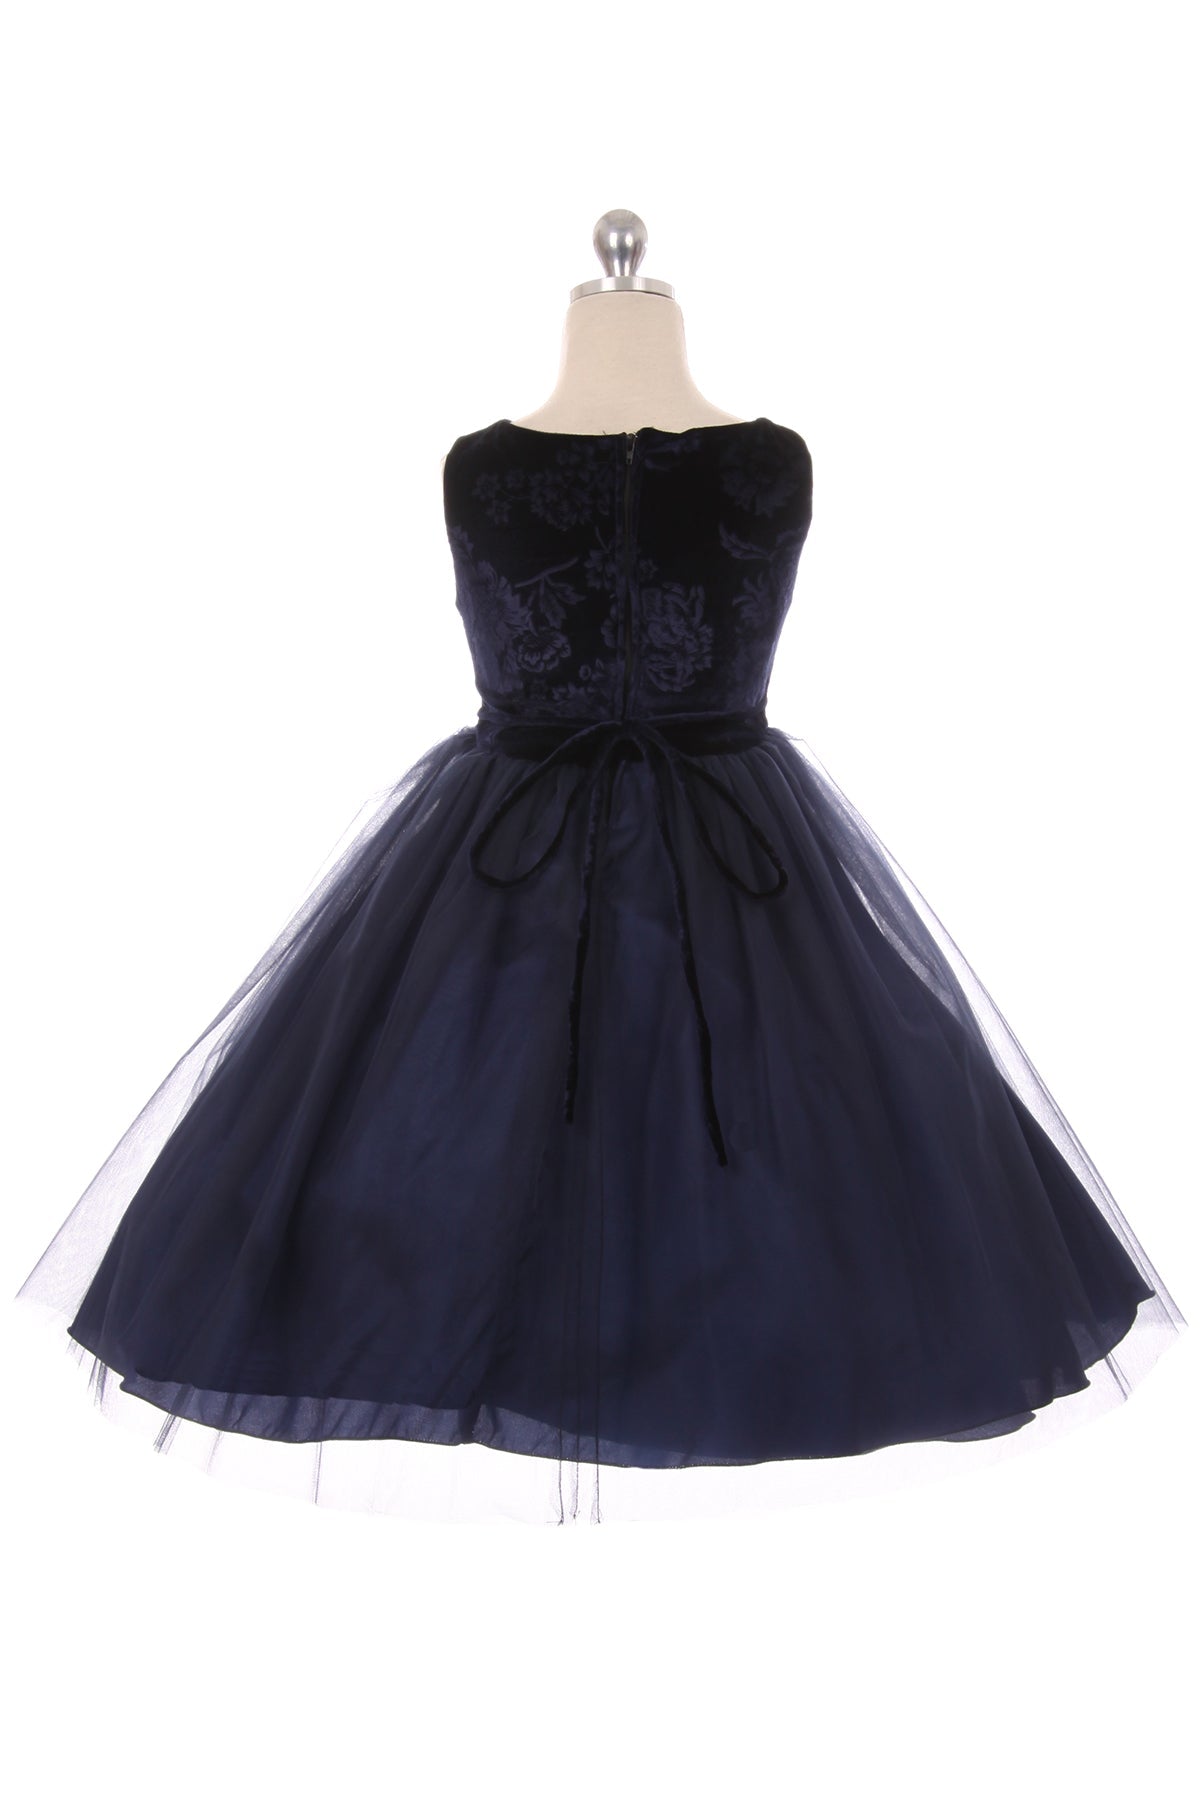 Dress - Velvet Rose Patch Plus Size Girl Dress